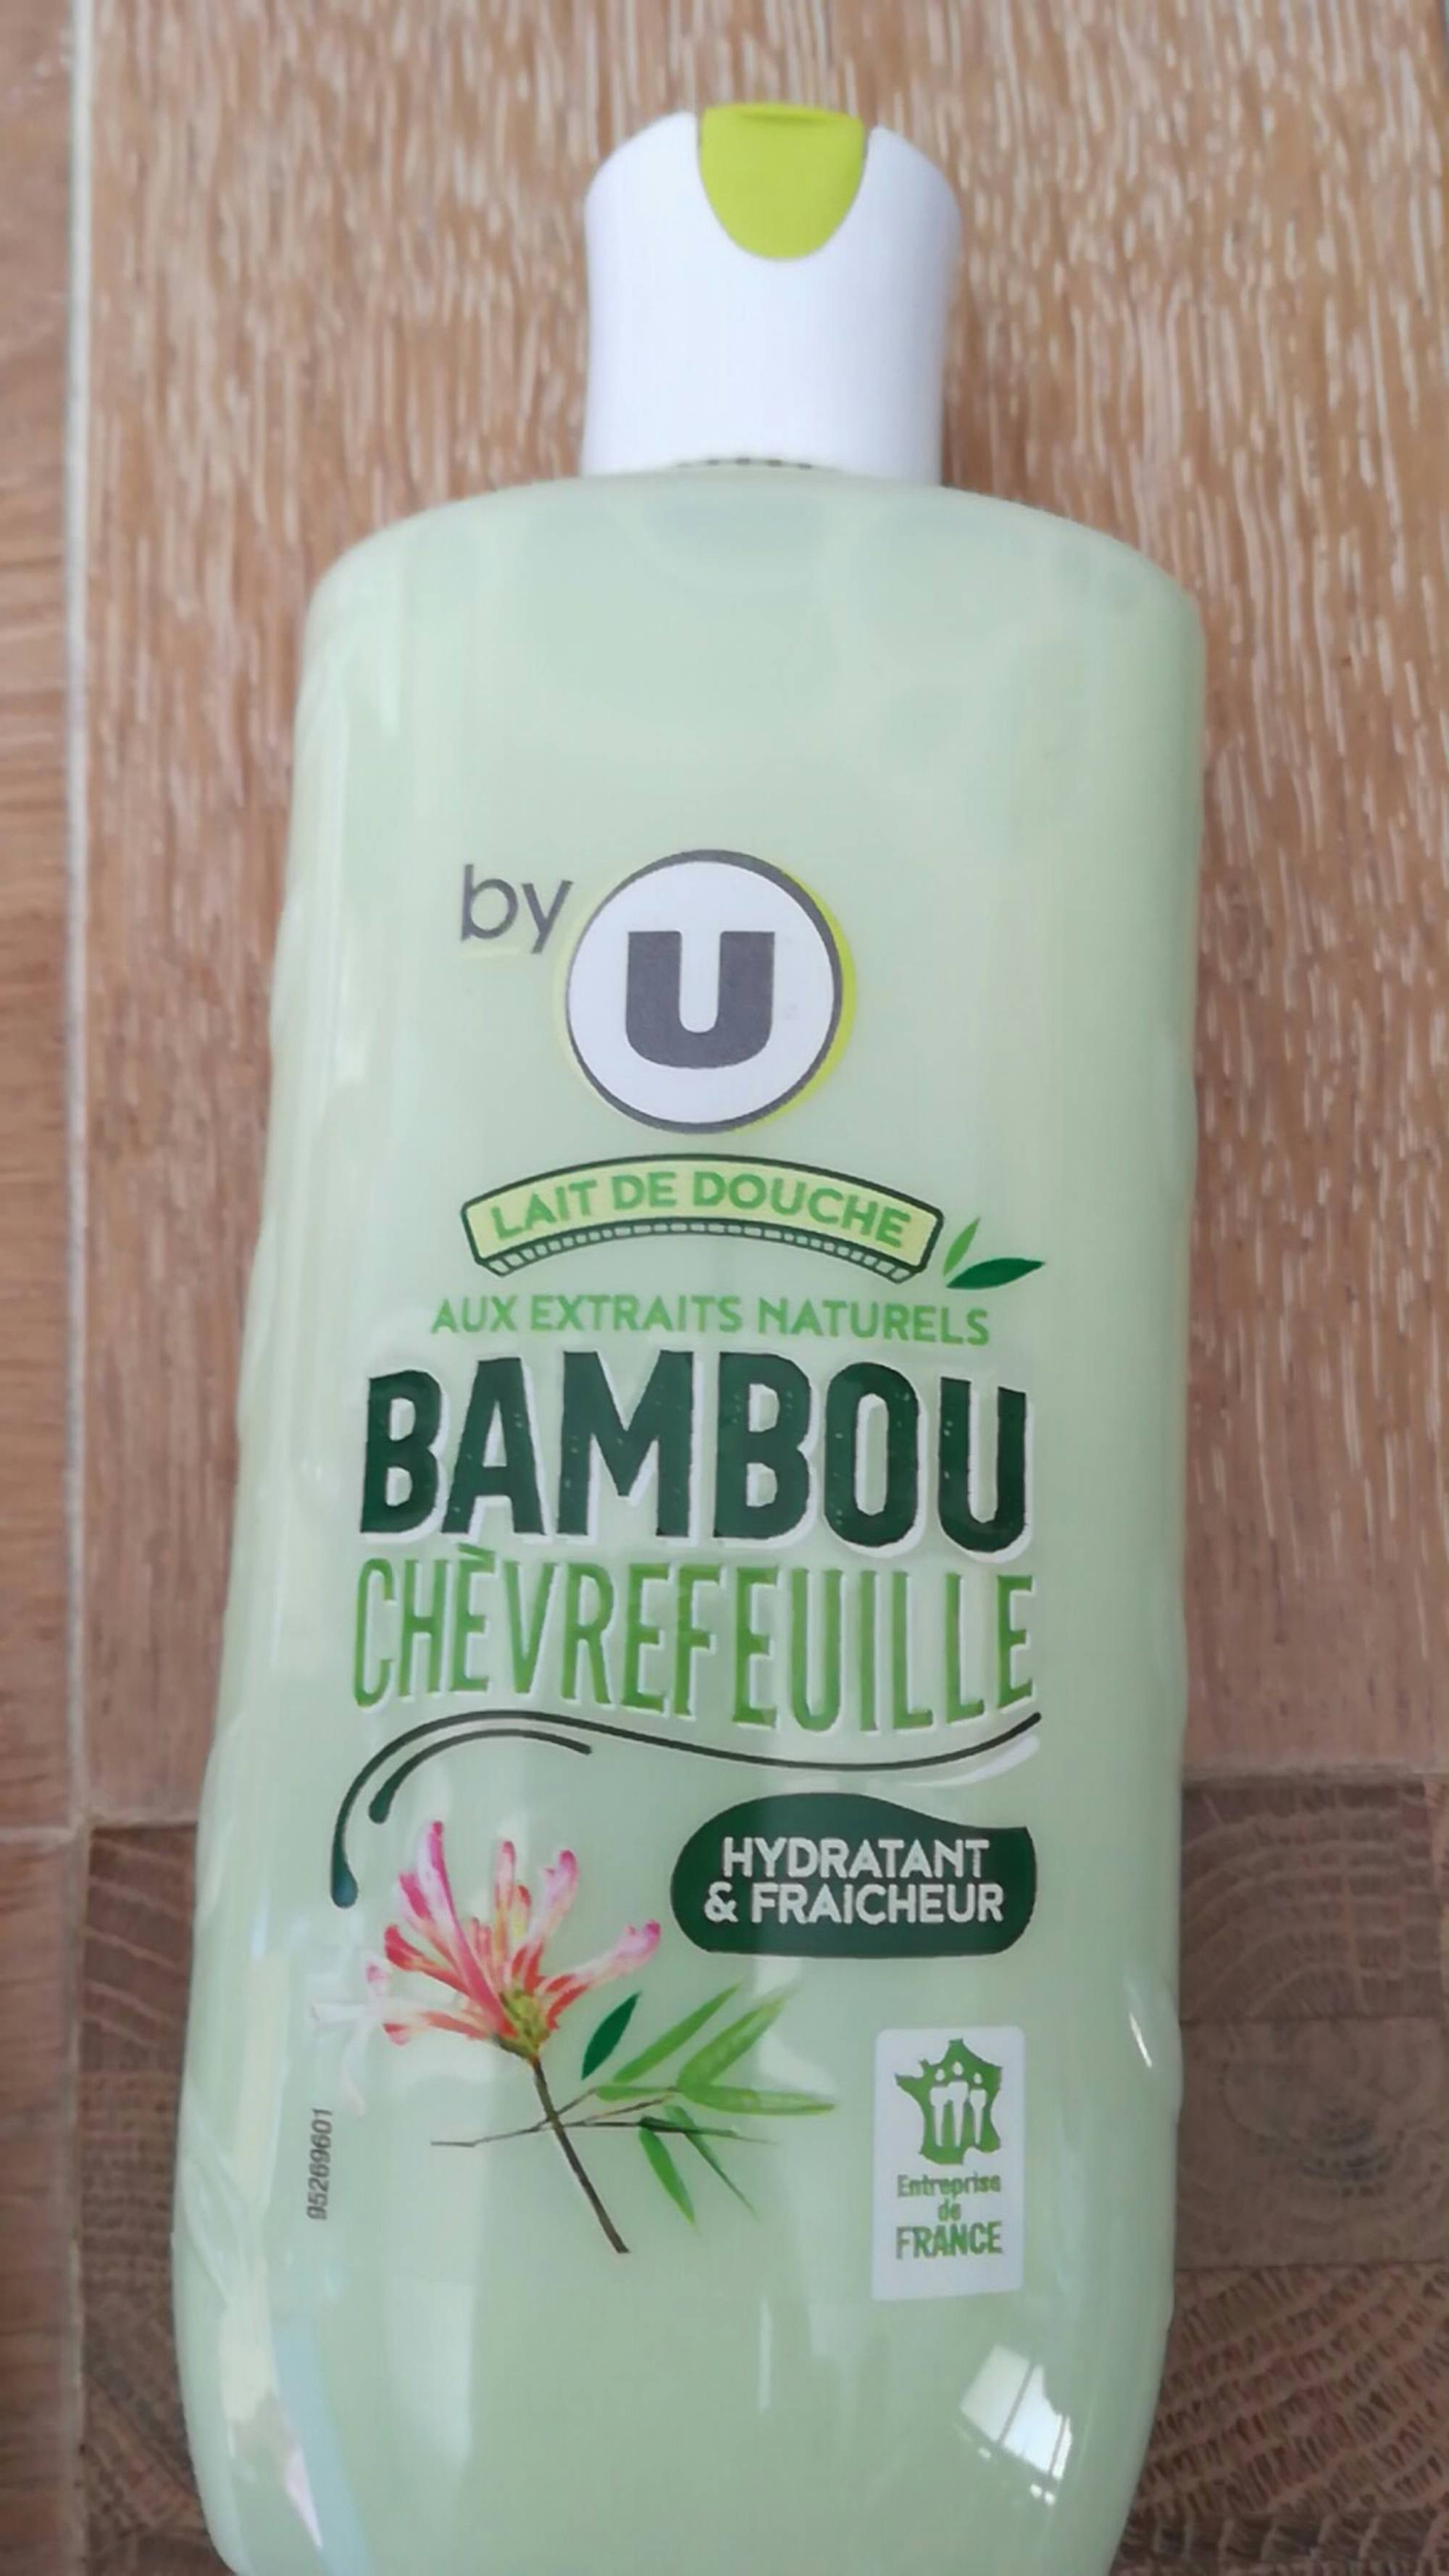 BY U - Lait de douche aux extraits naturels bambou chèvrefeuille